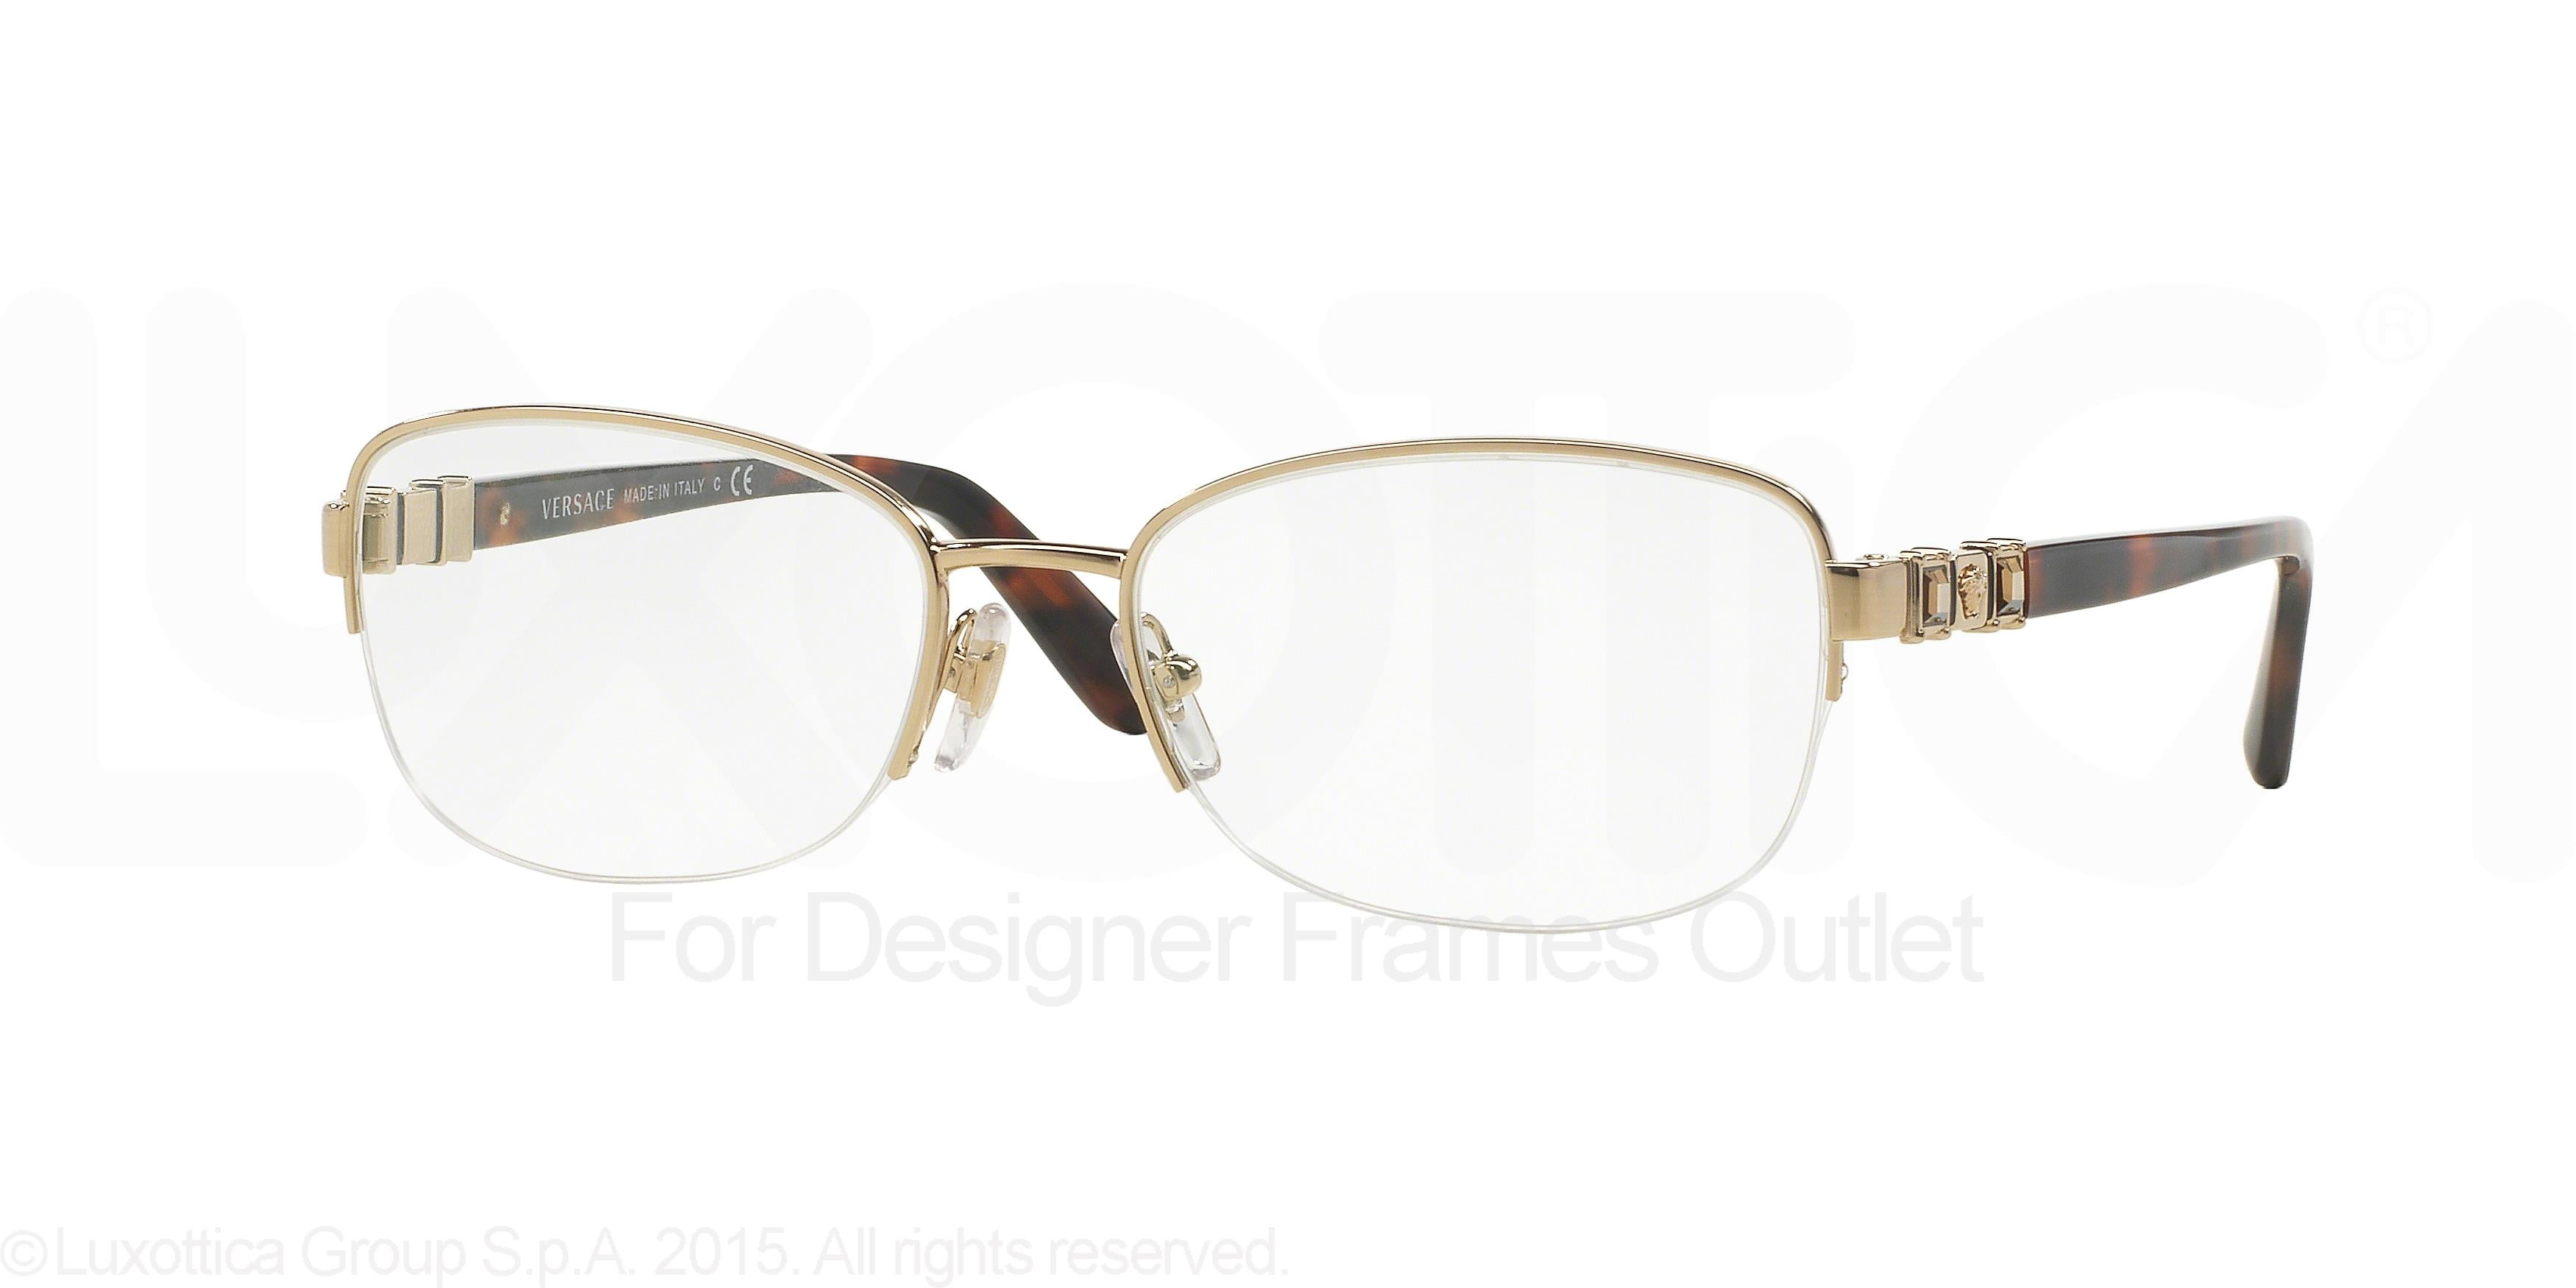 versace 1252 eyeglasses